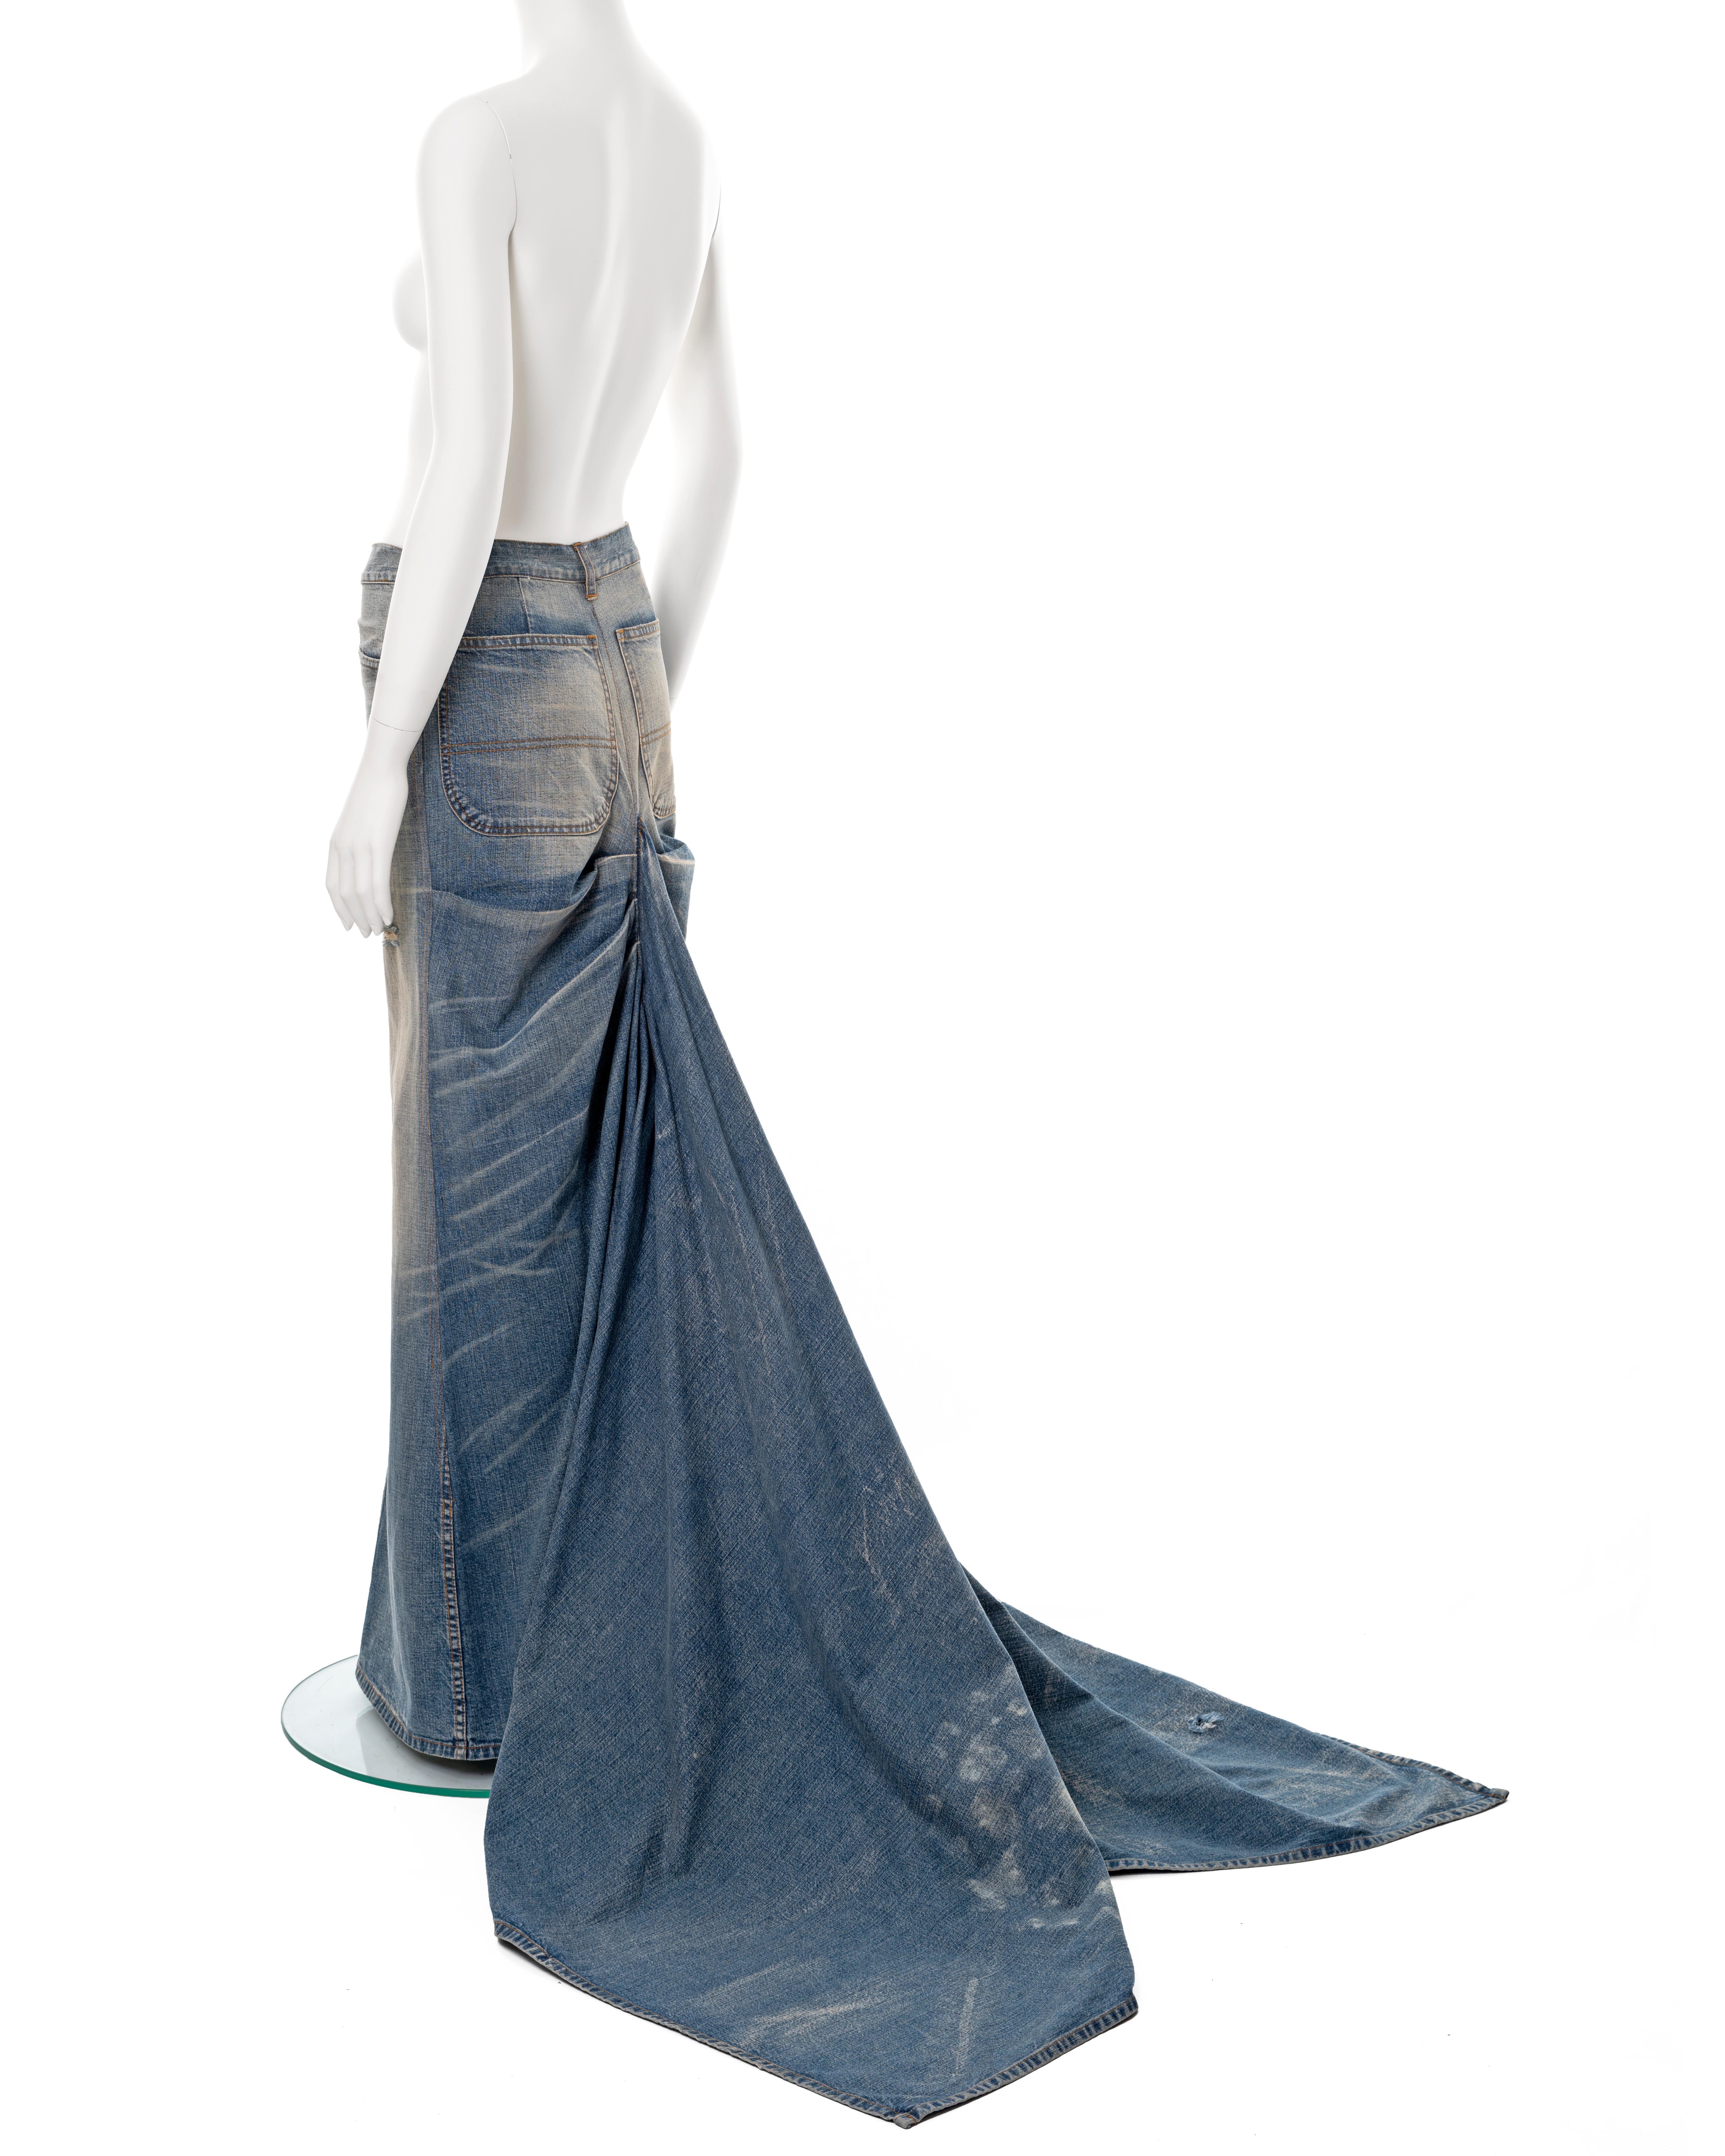 Women's Ralph Lauren sandwashed denim maxi skirt with train, ss 2003